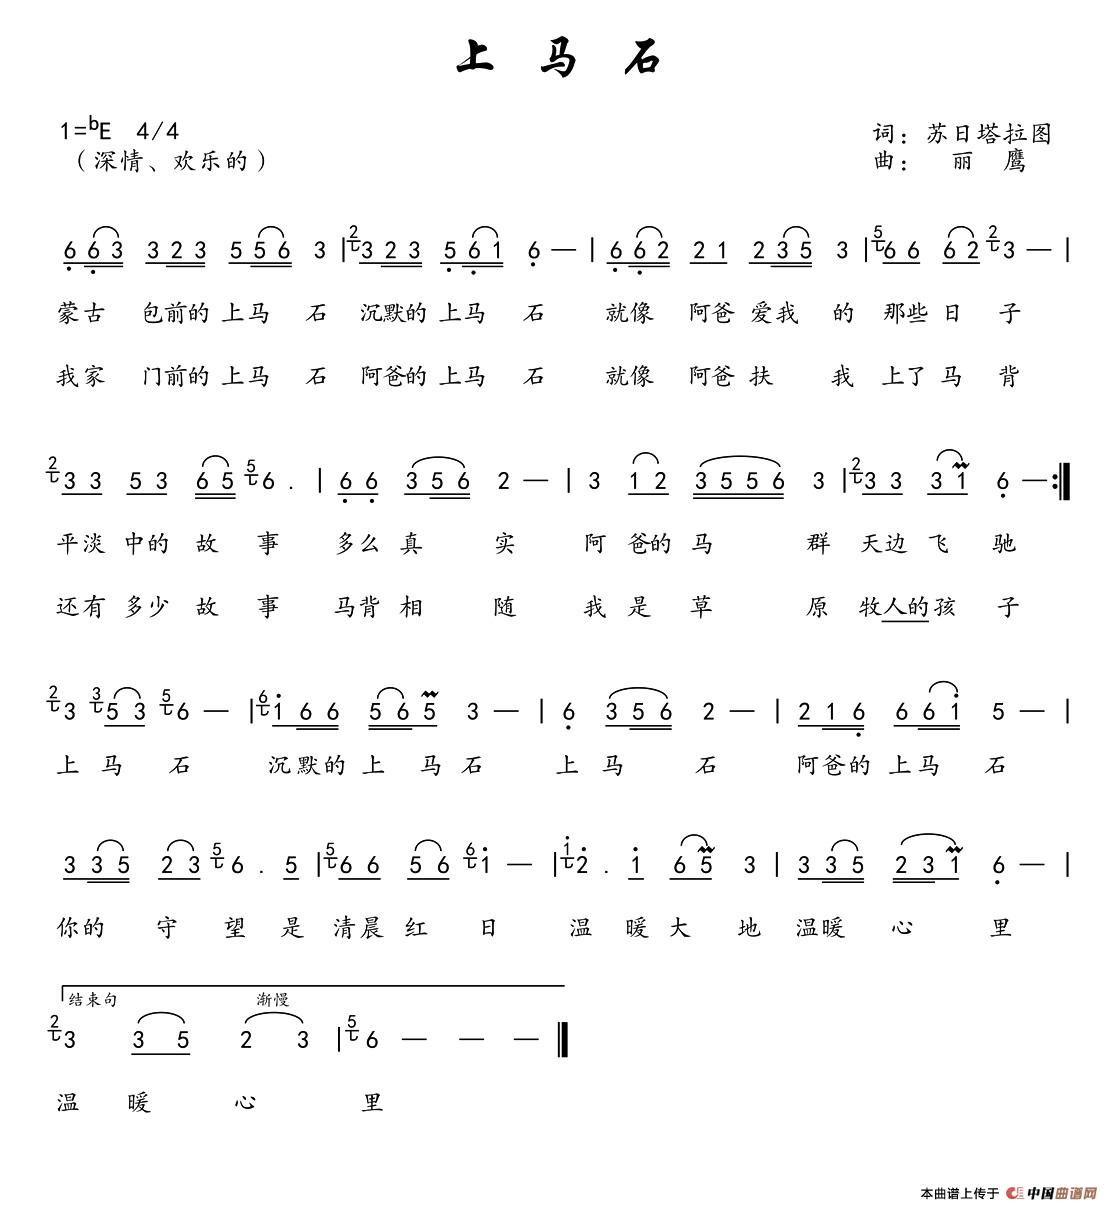 上马石(1)_上马石 Score.jpg